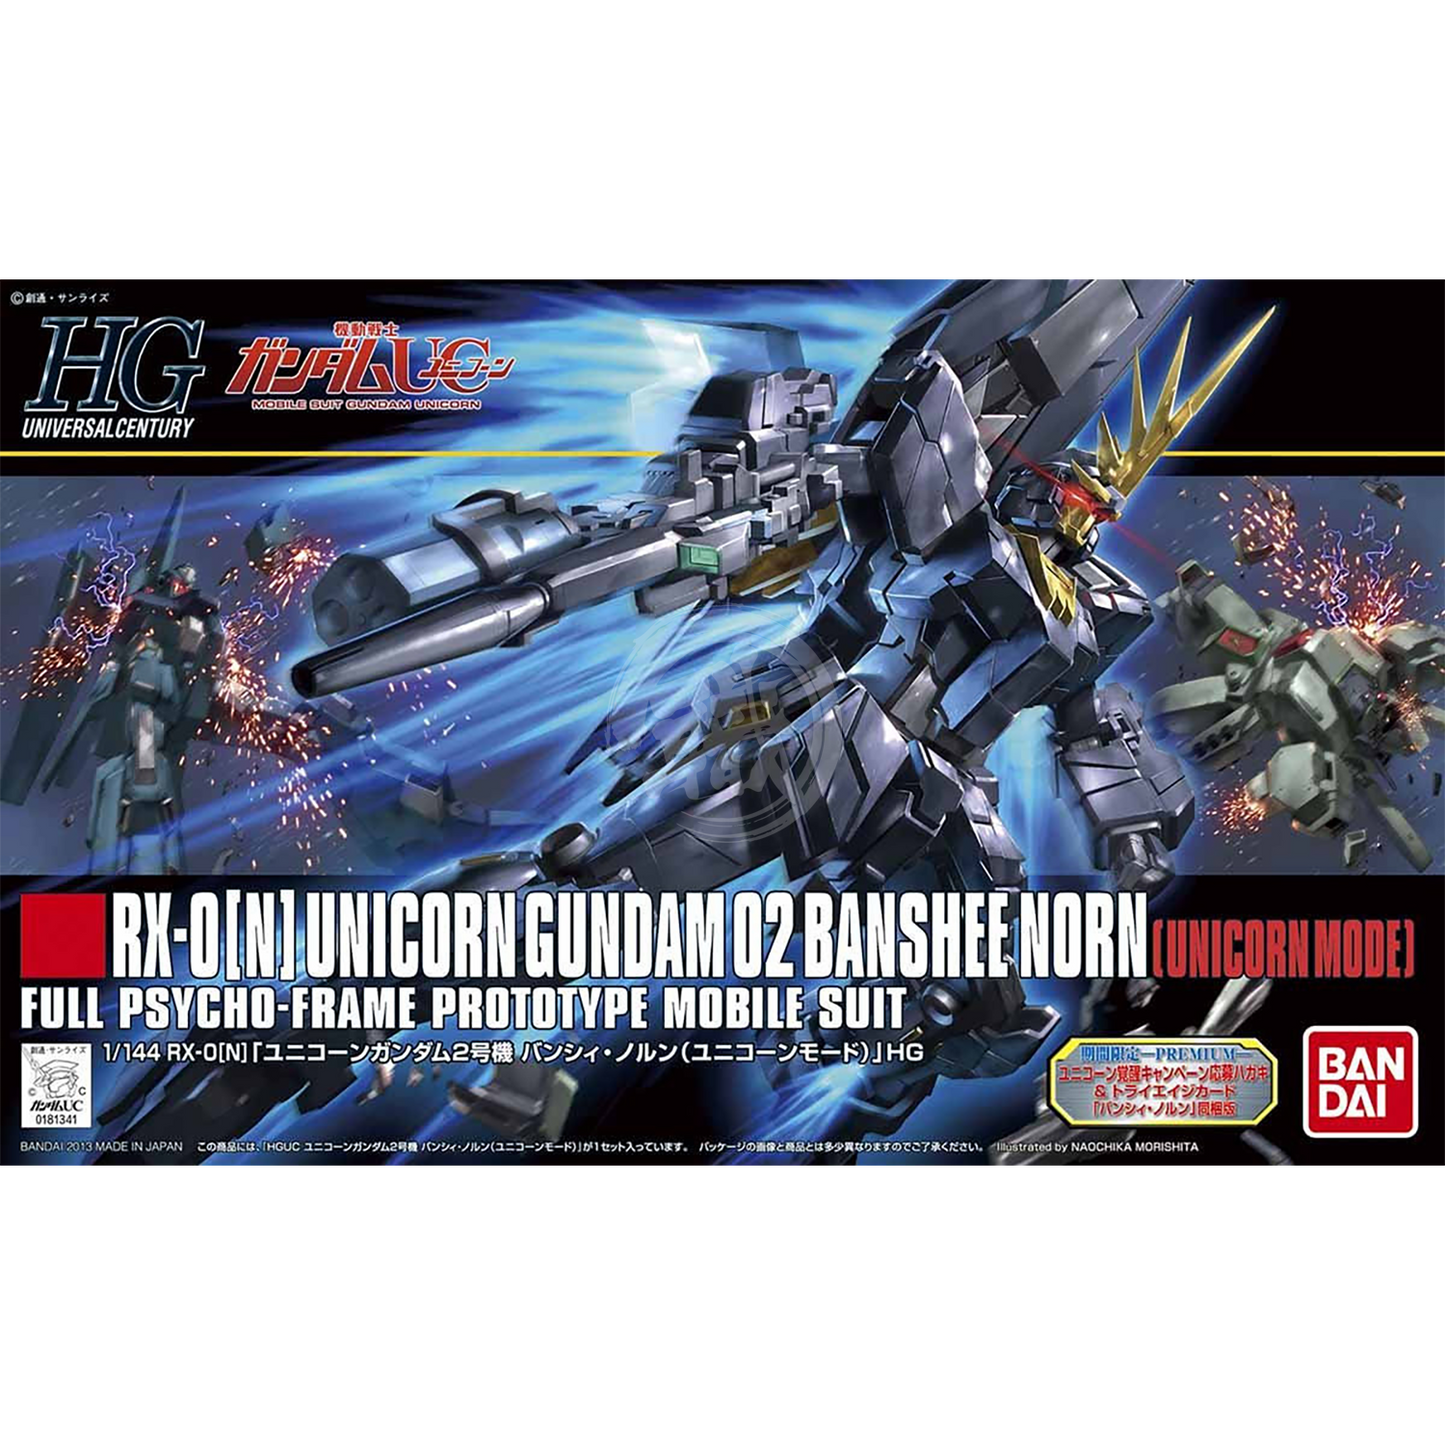 HG Unicorn Gundam Unit-02 Banshee Norn [Unicorn Mode] - ShokuninGunpla